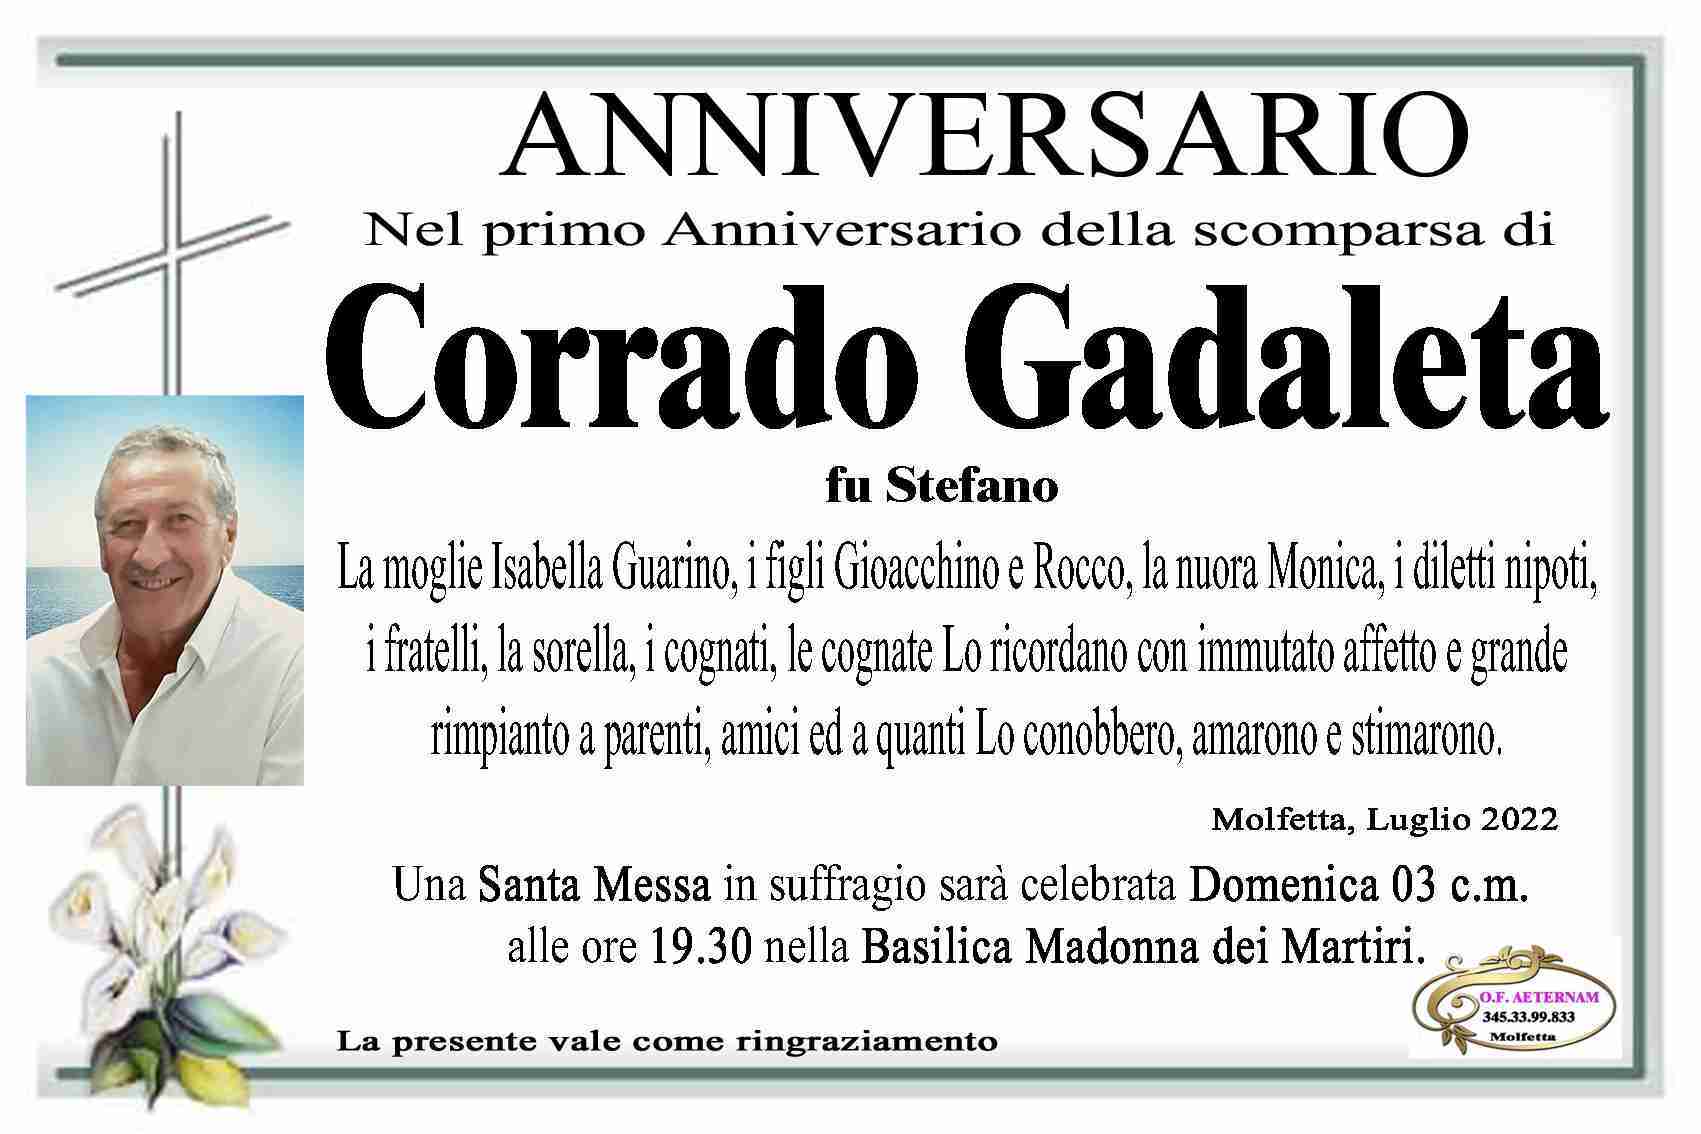 Corrado Gadaleta